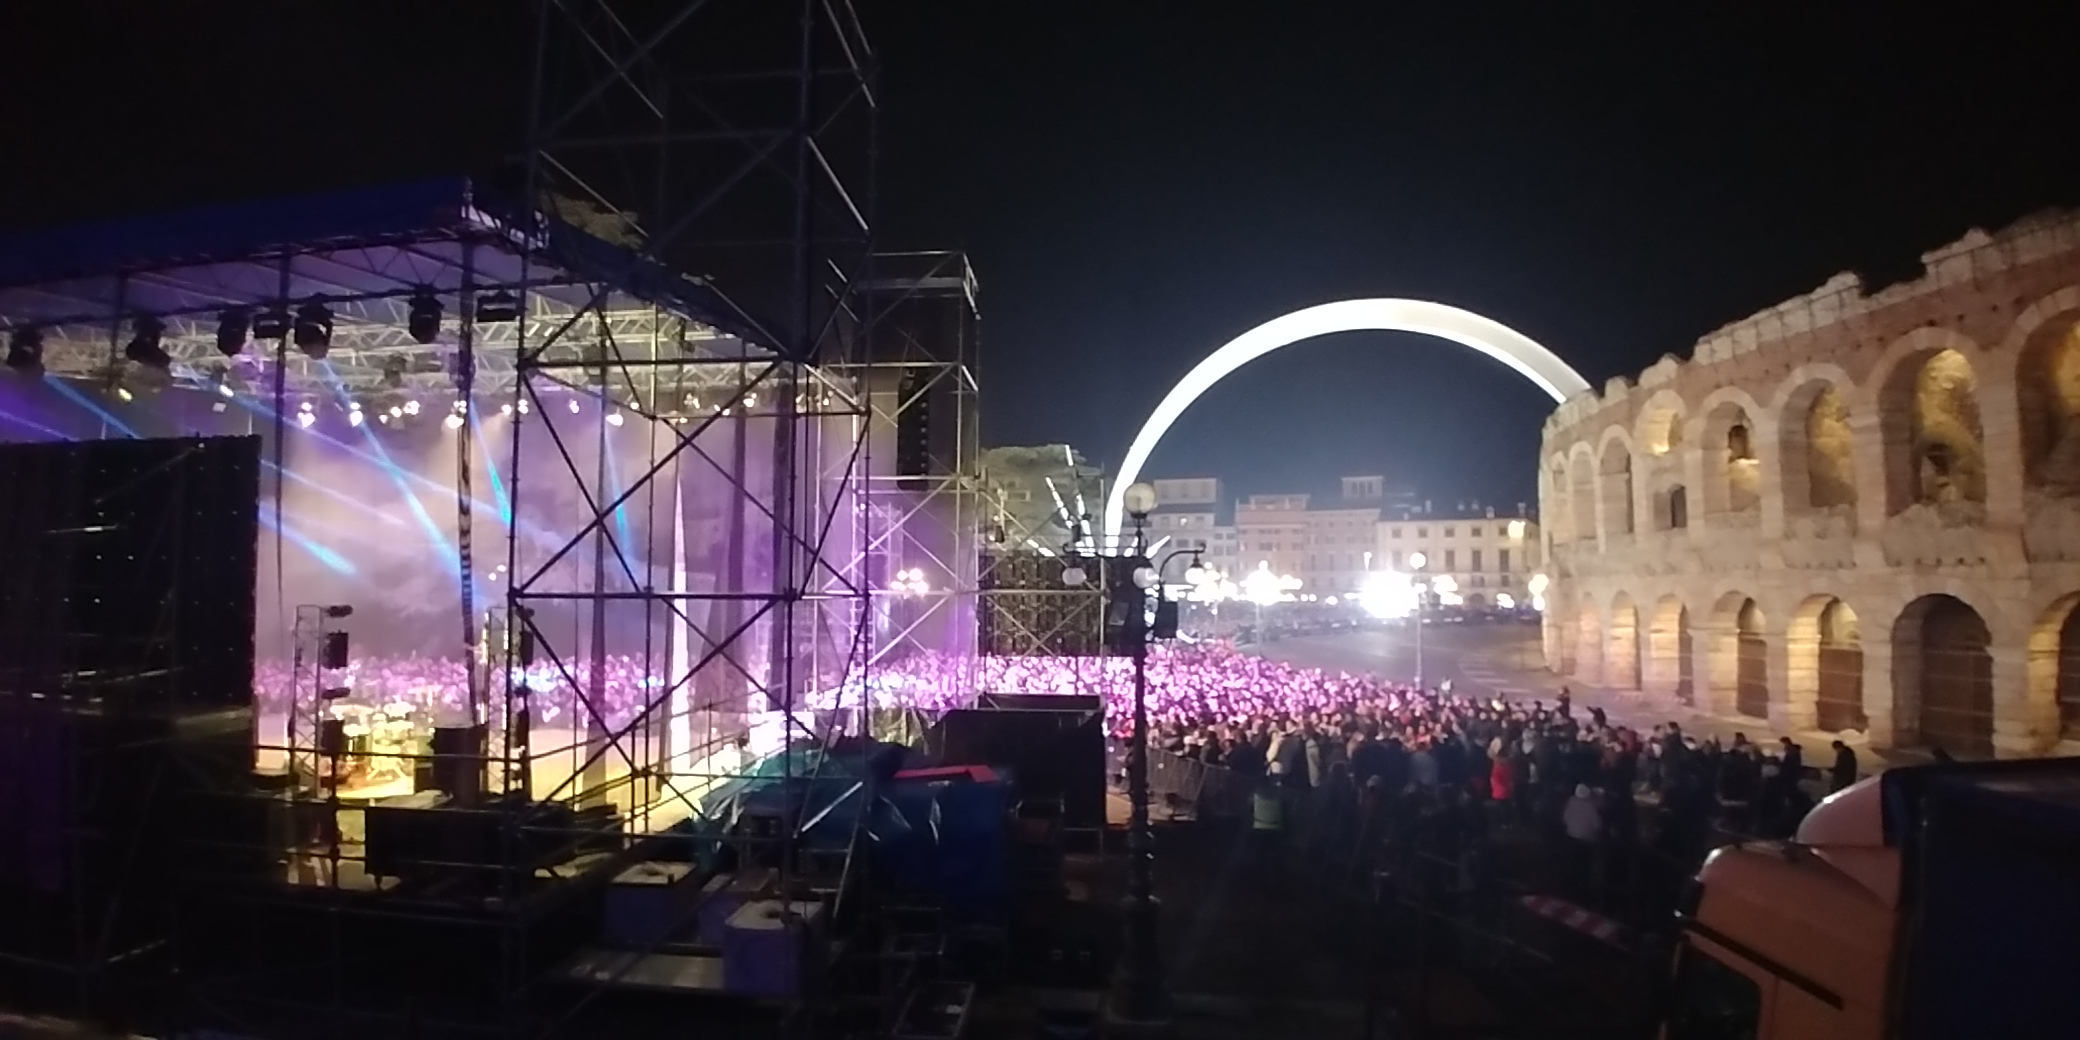 Capodanno Piazza Bra Verona 2020